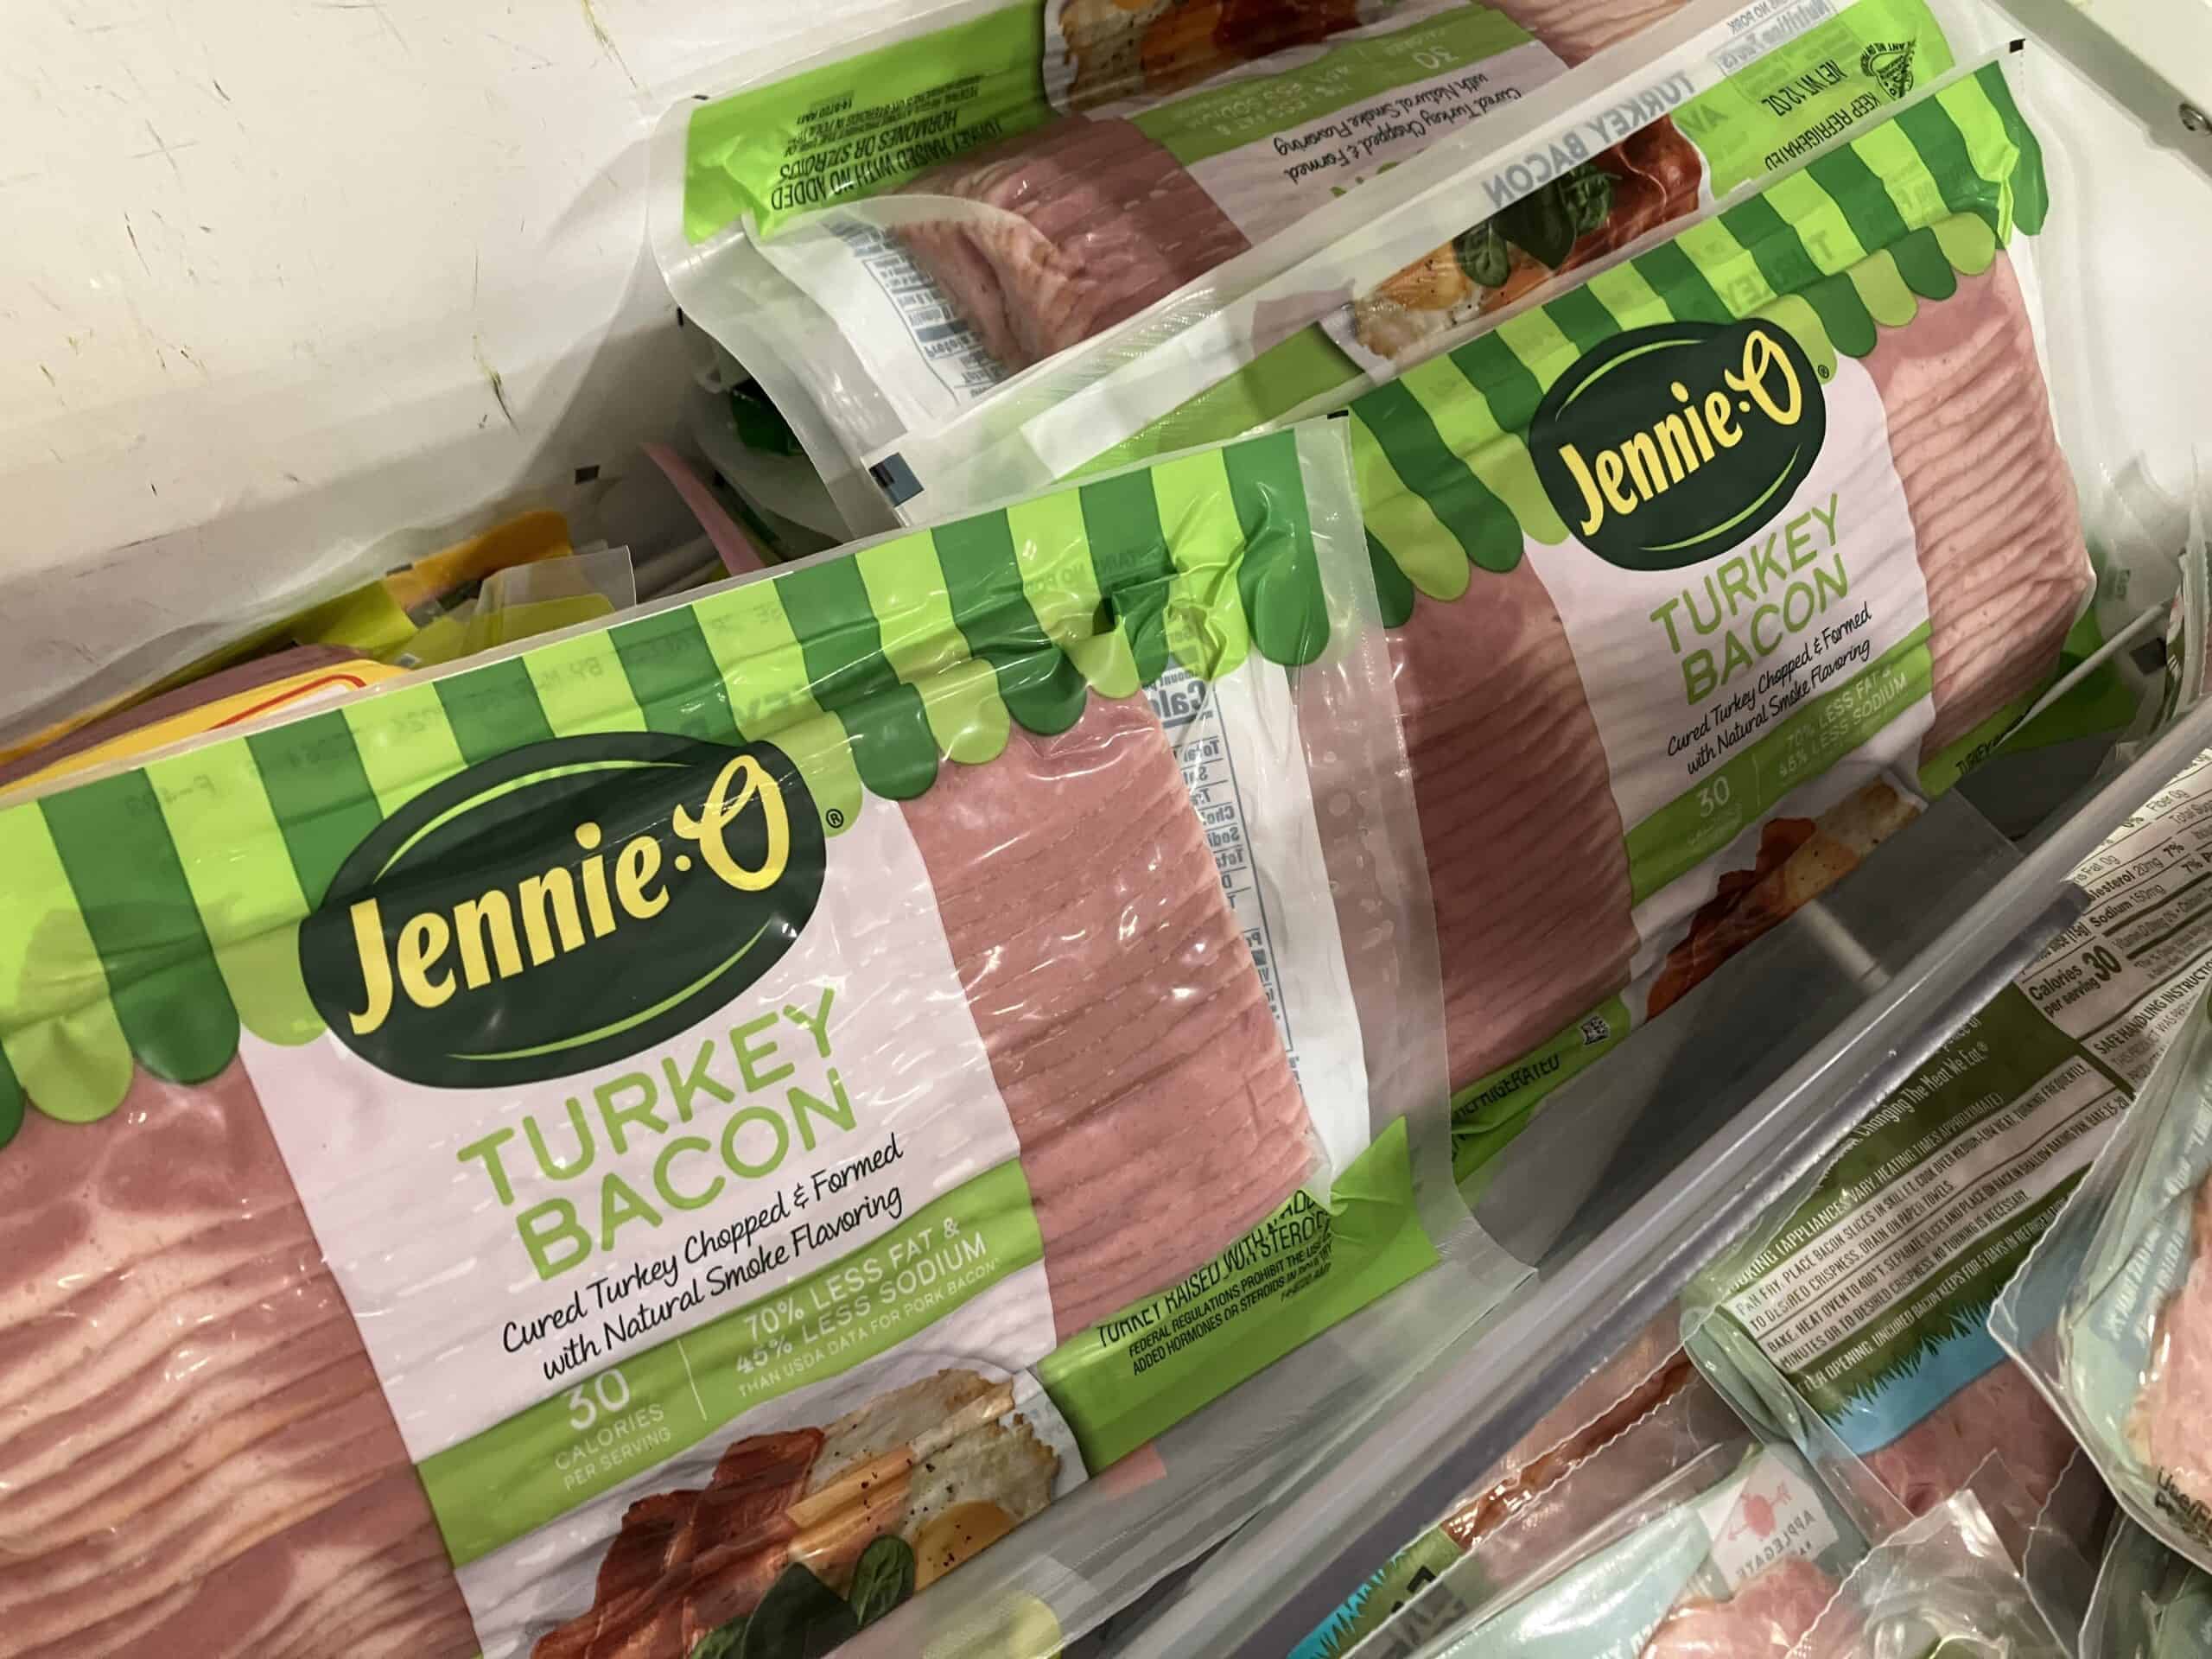 Jennie-O turkey bacon